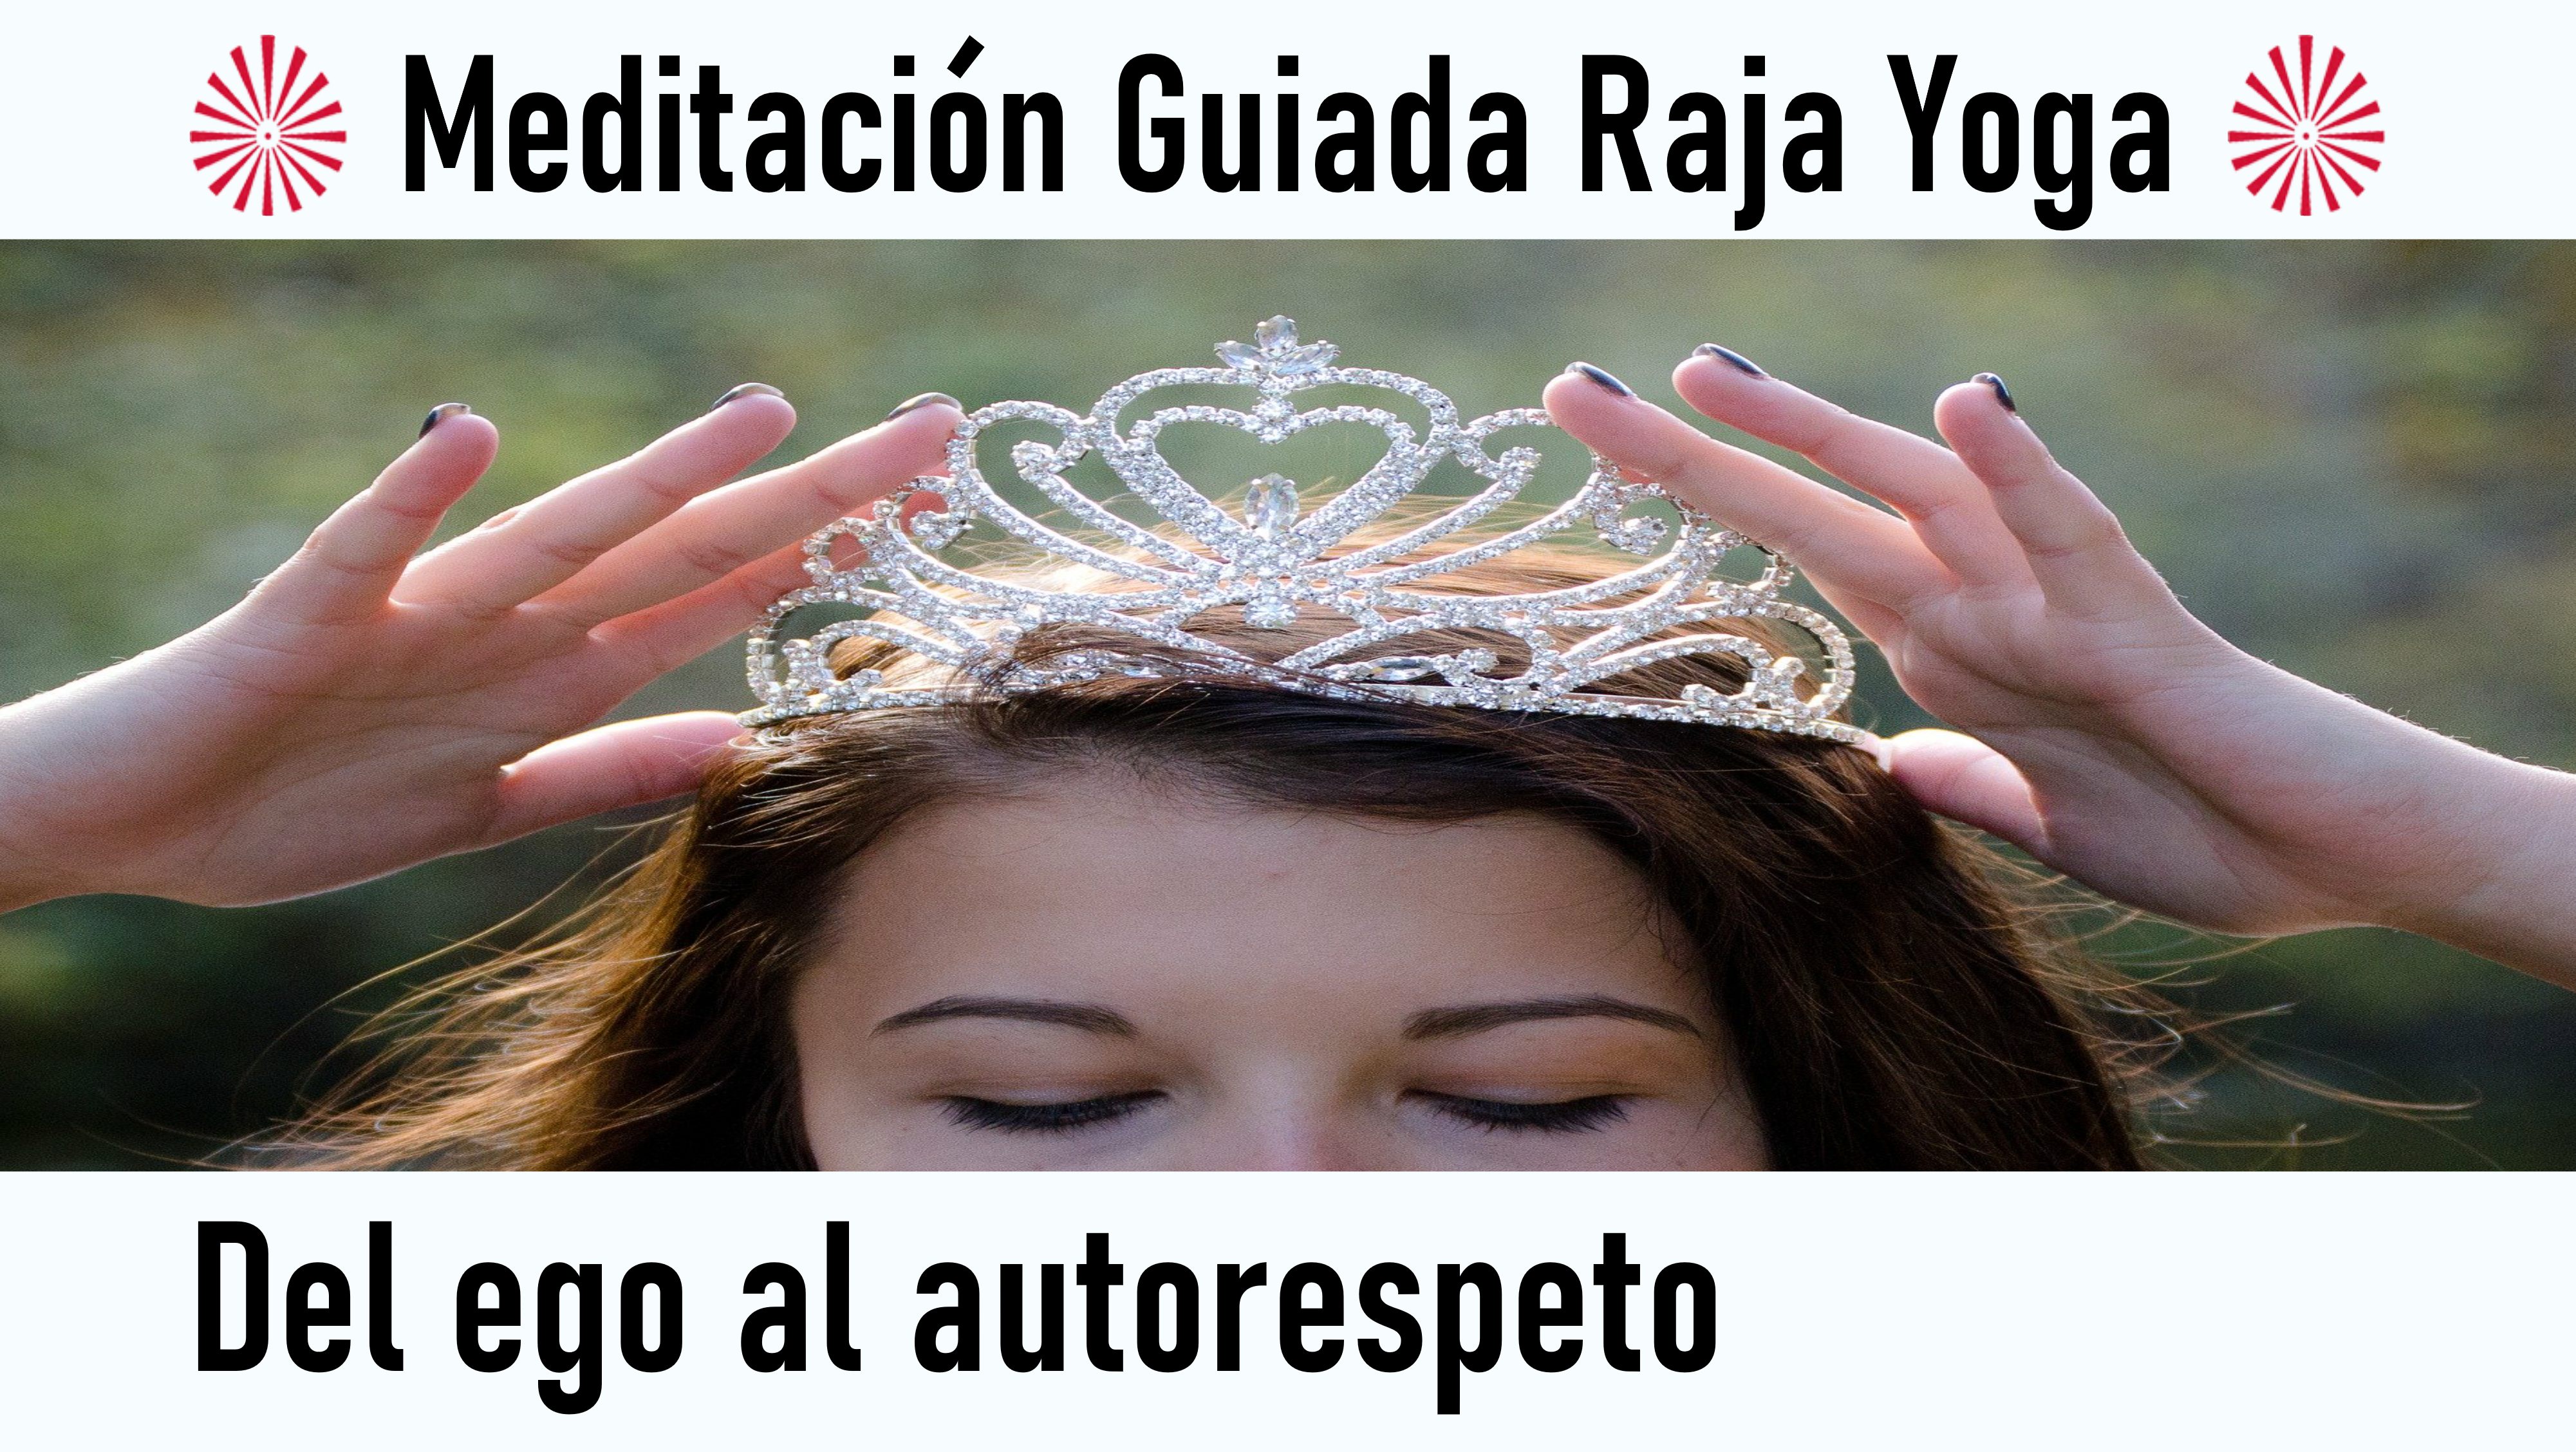 Meditación Raja Yoga: Del ego al autorespeto (17 Septiembre 2020) On-line desde Valencia